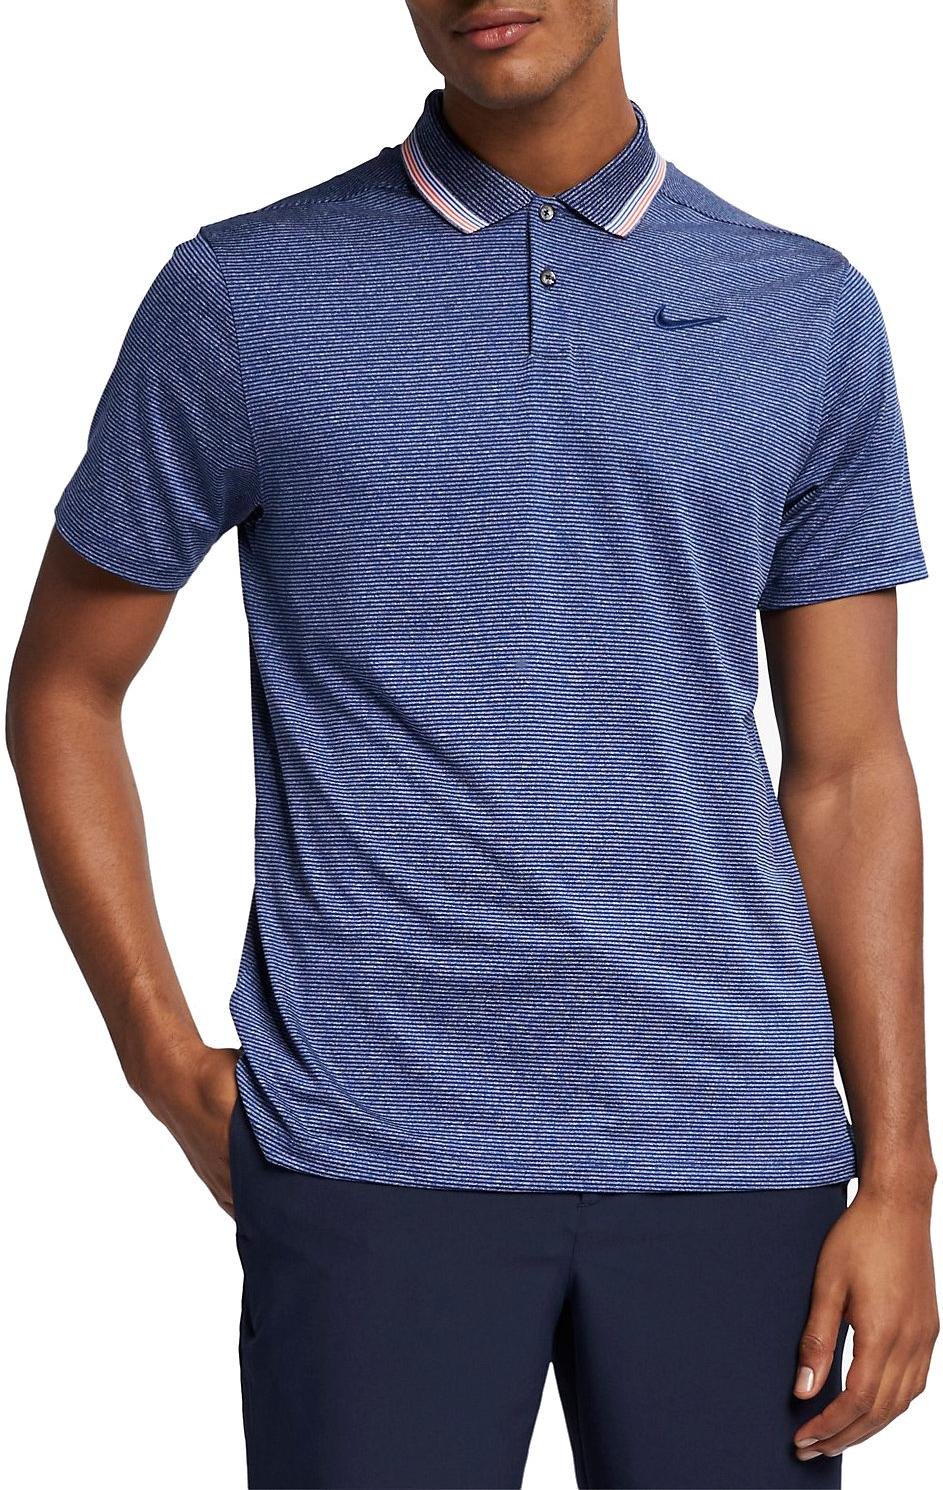 Pánská golfová polokošile s proužky Nike Dri-FIT Vapor